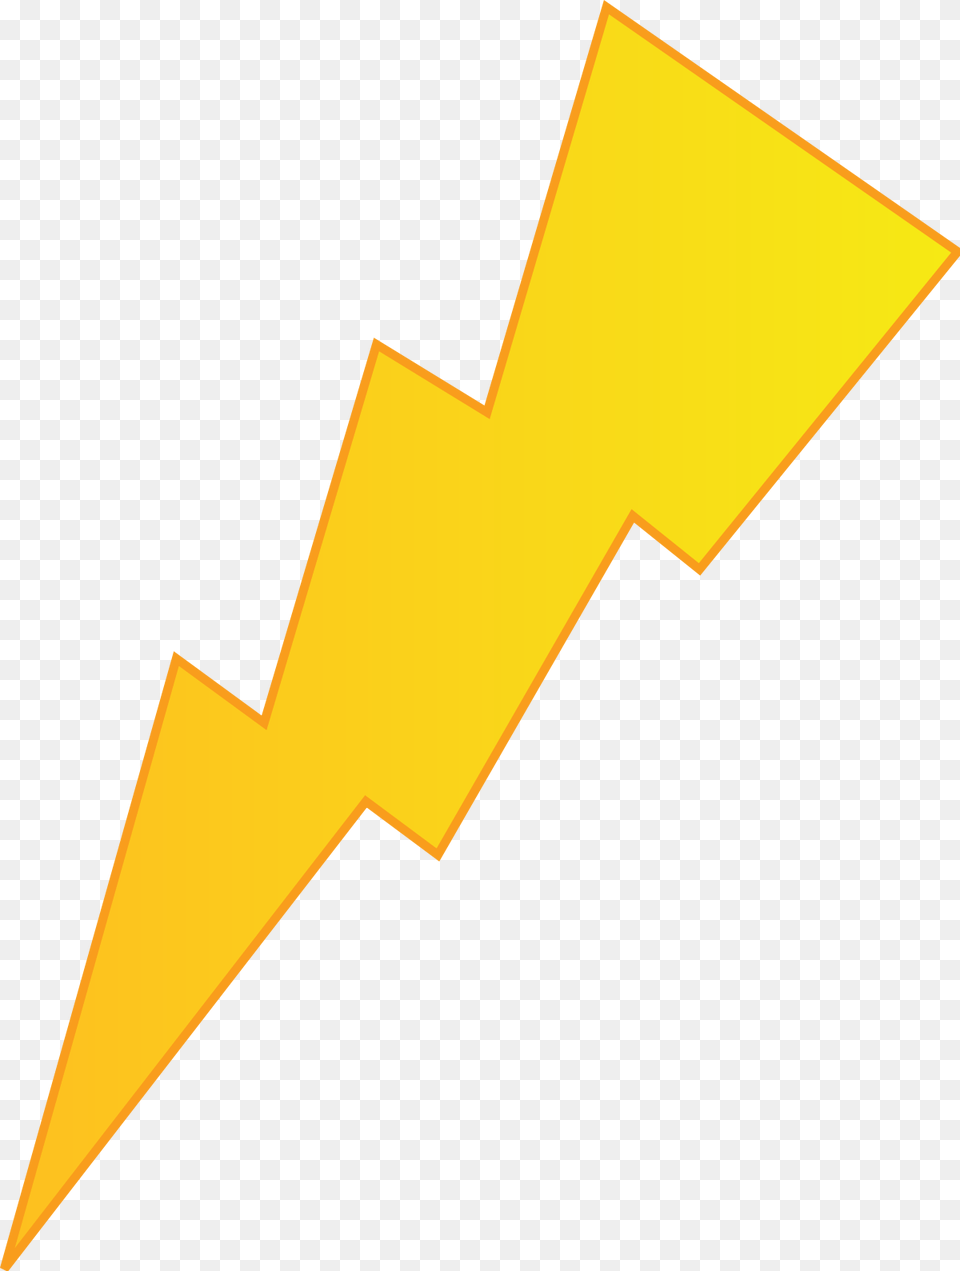 Lightning Svg, Logo, Cross, Symbol Png Image